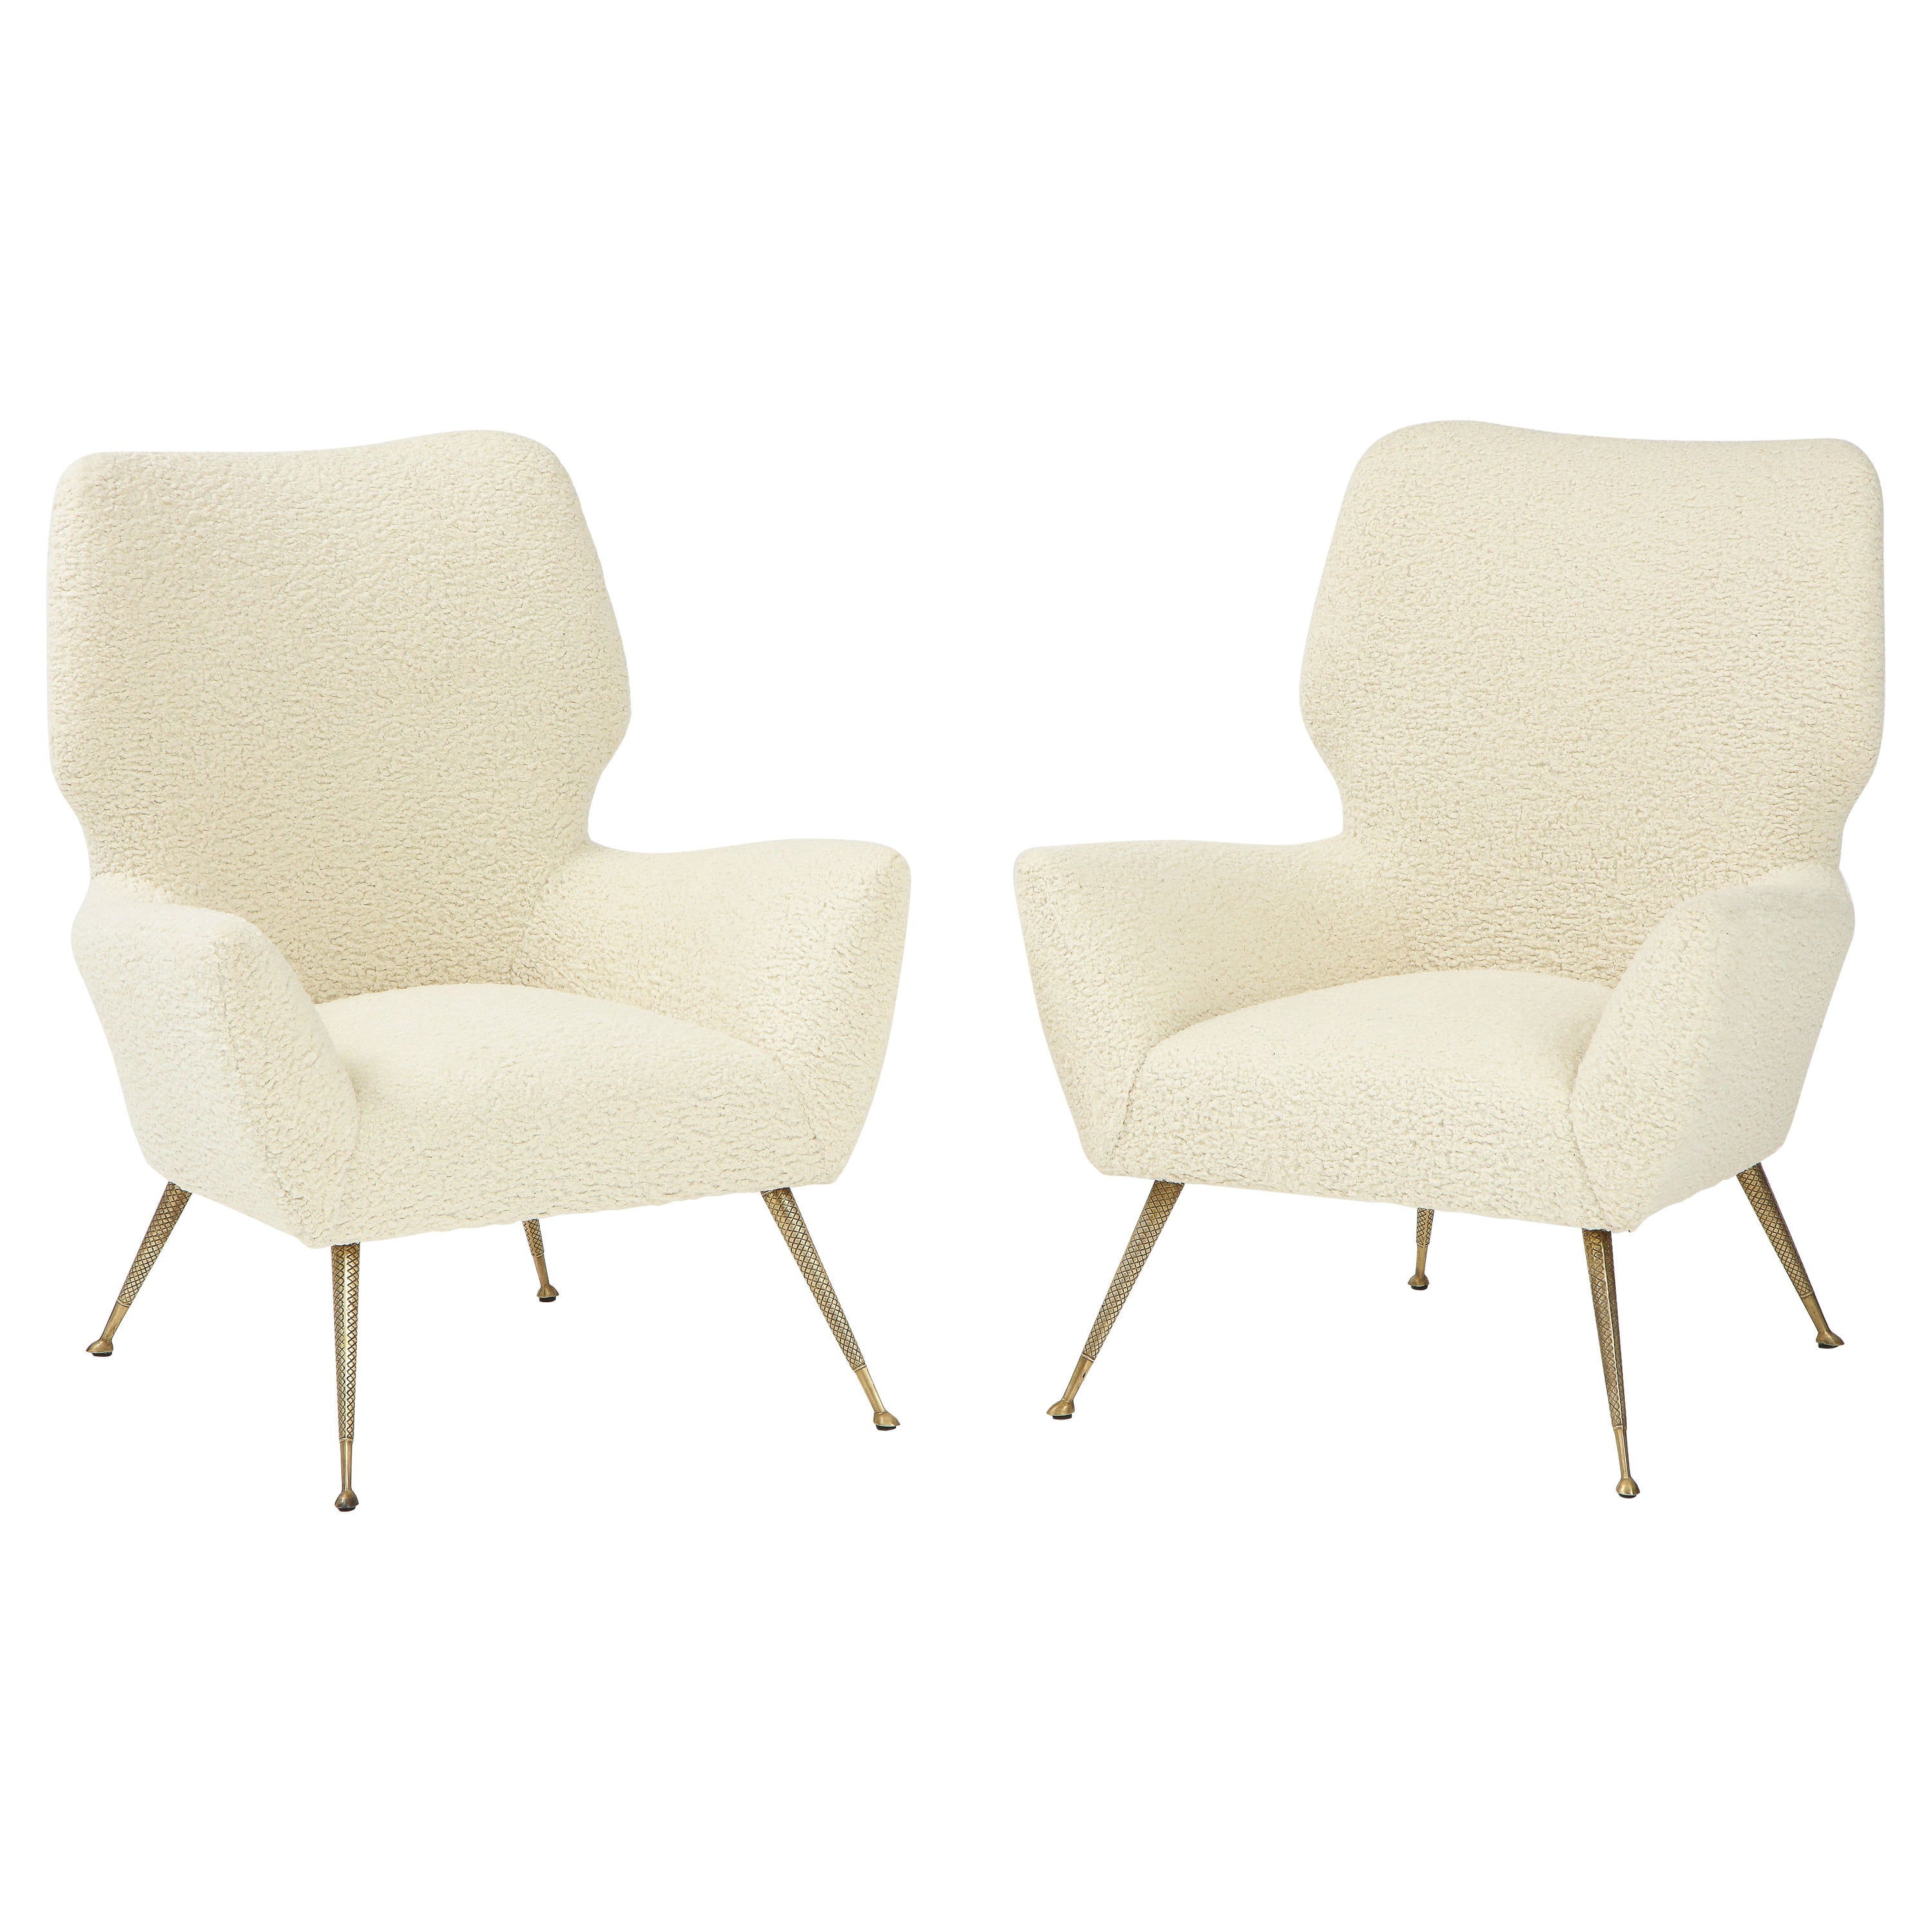 Italian Pair of Chairs with Brass Legs, Gio Ponti for Casa e Giardino